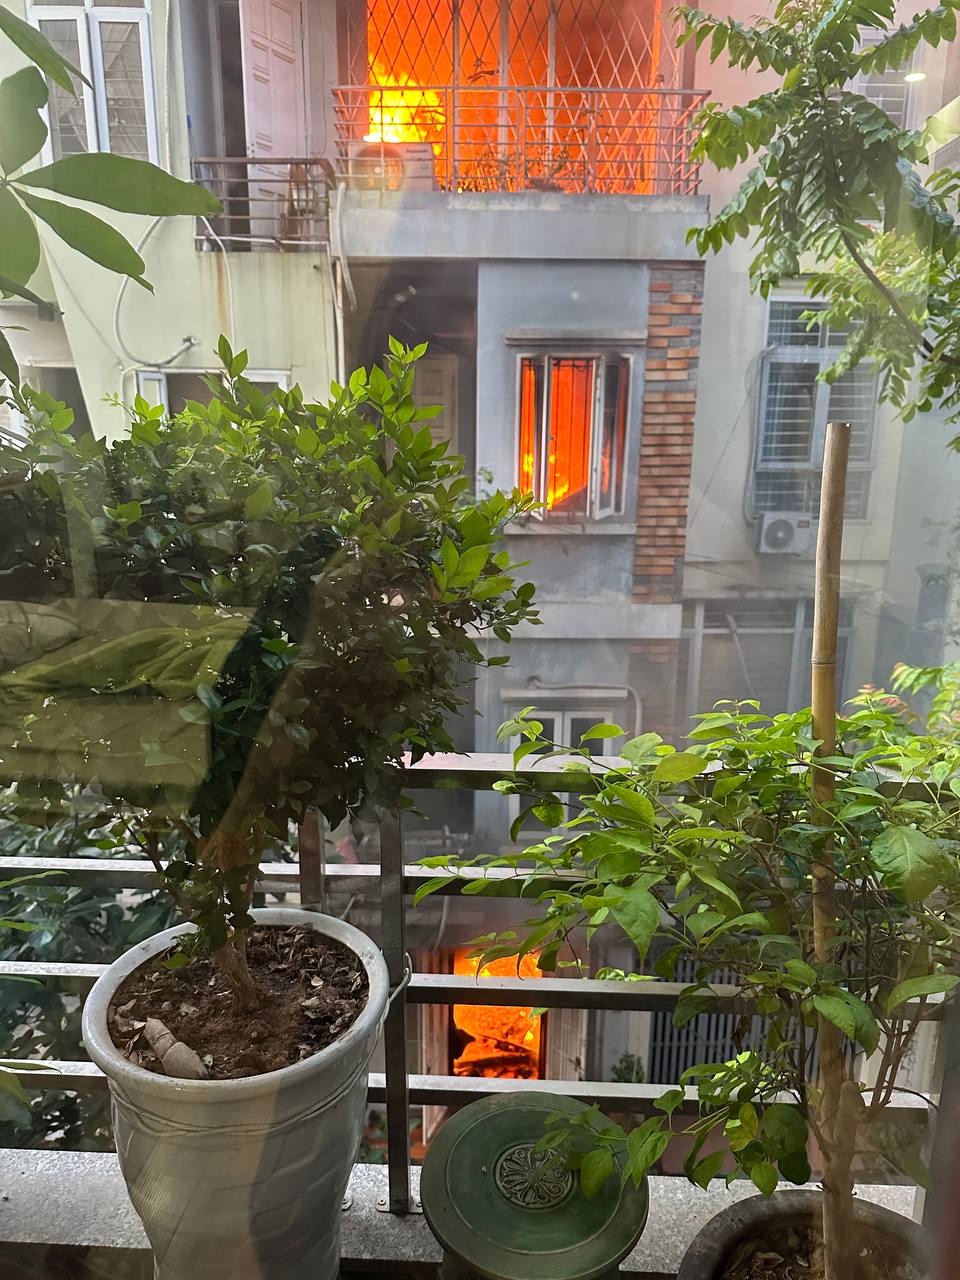 Nóng: Cháy lớn tại căn nhà 4 tầng ở Hà Nội, 2 bé trai cùng gia đình leo ban công thoát thân - Ảnh 4